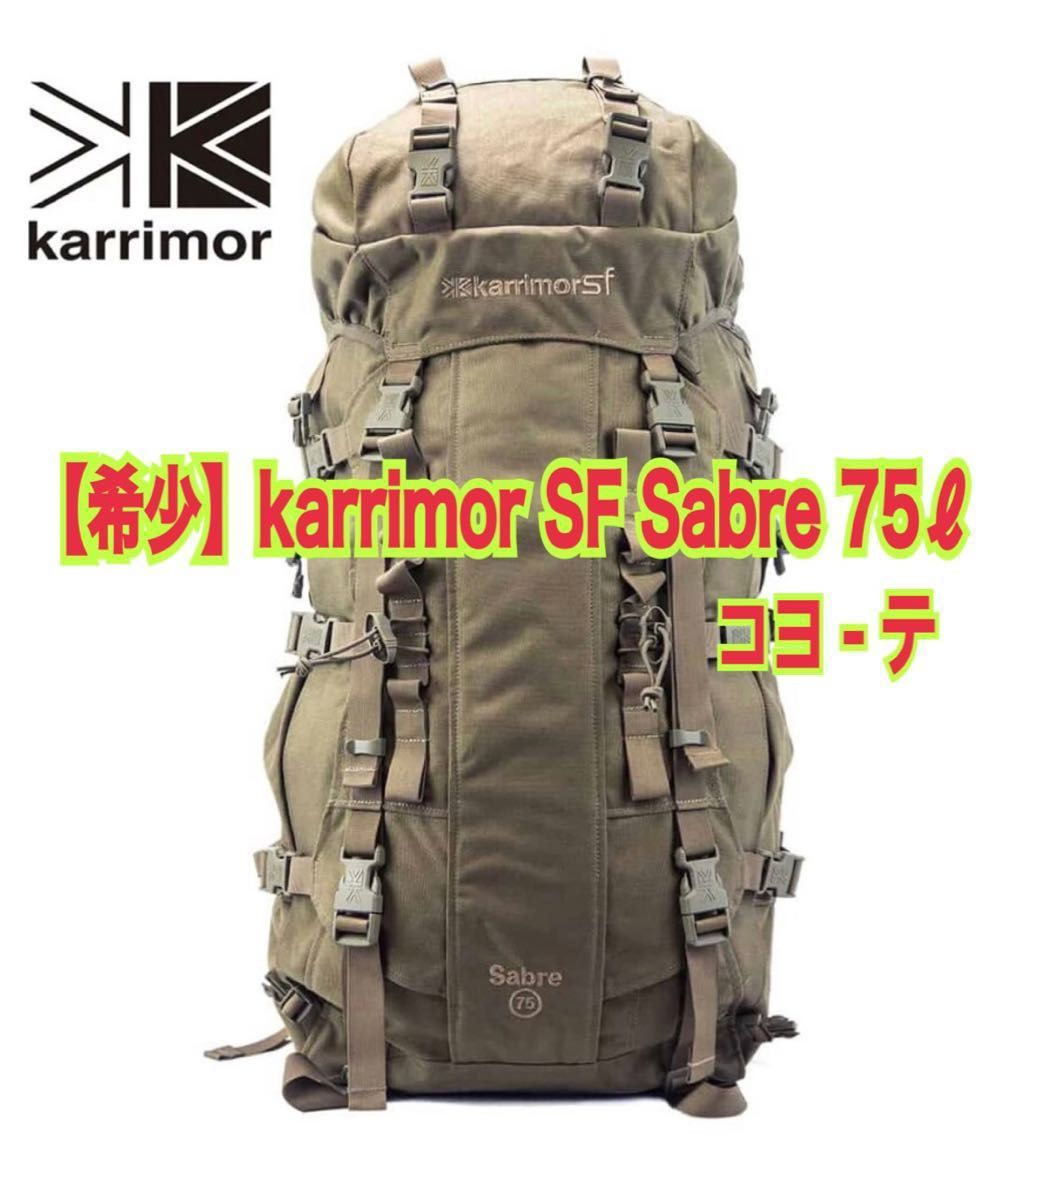 ヤマト工芸 Karrimor Sf(カリマースペシャルフォース) Sabre 45